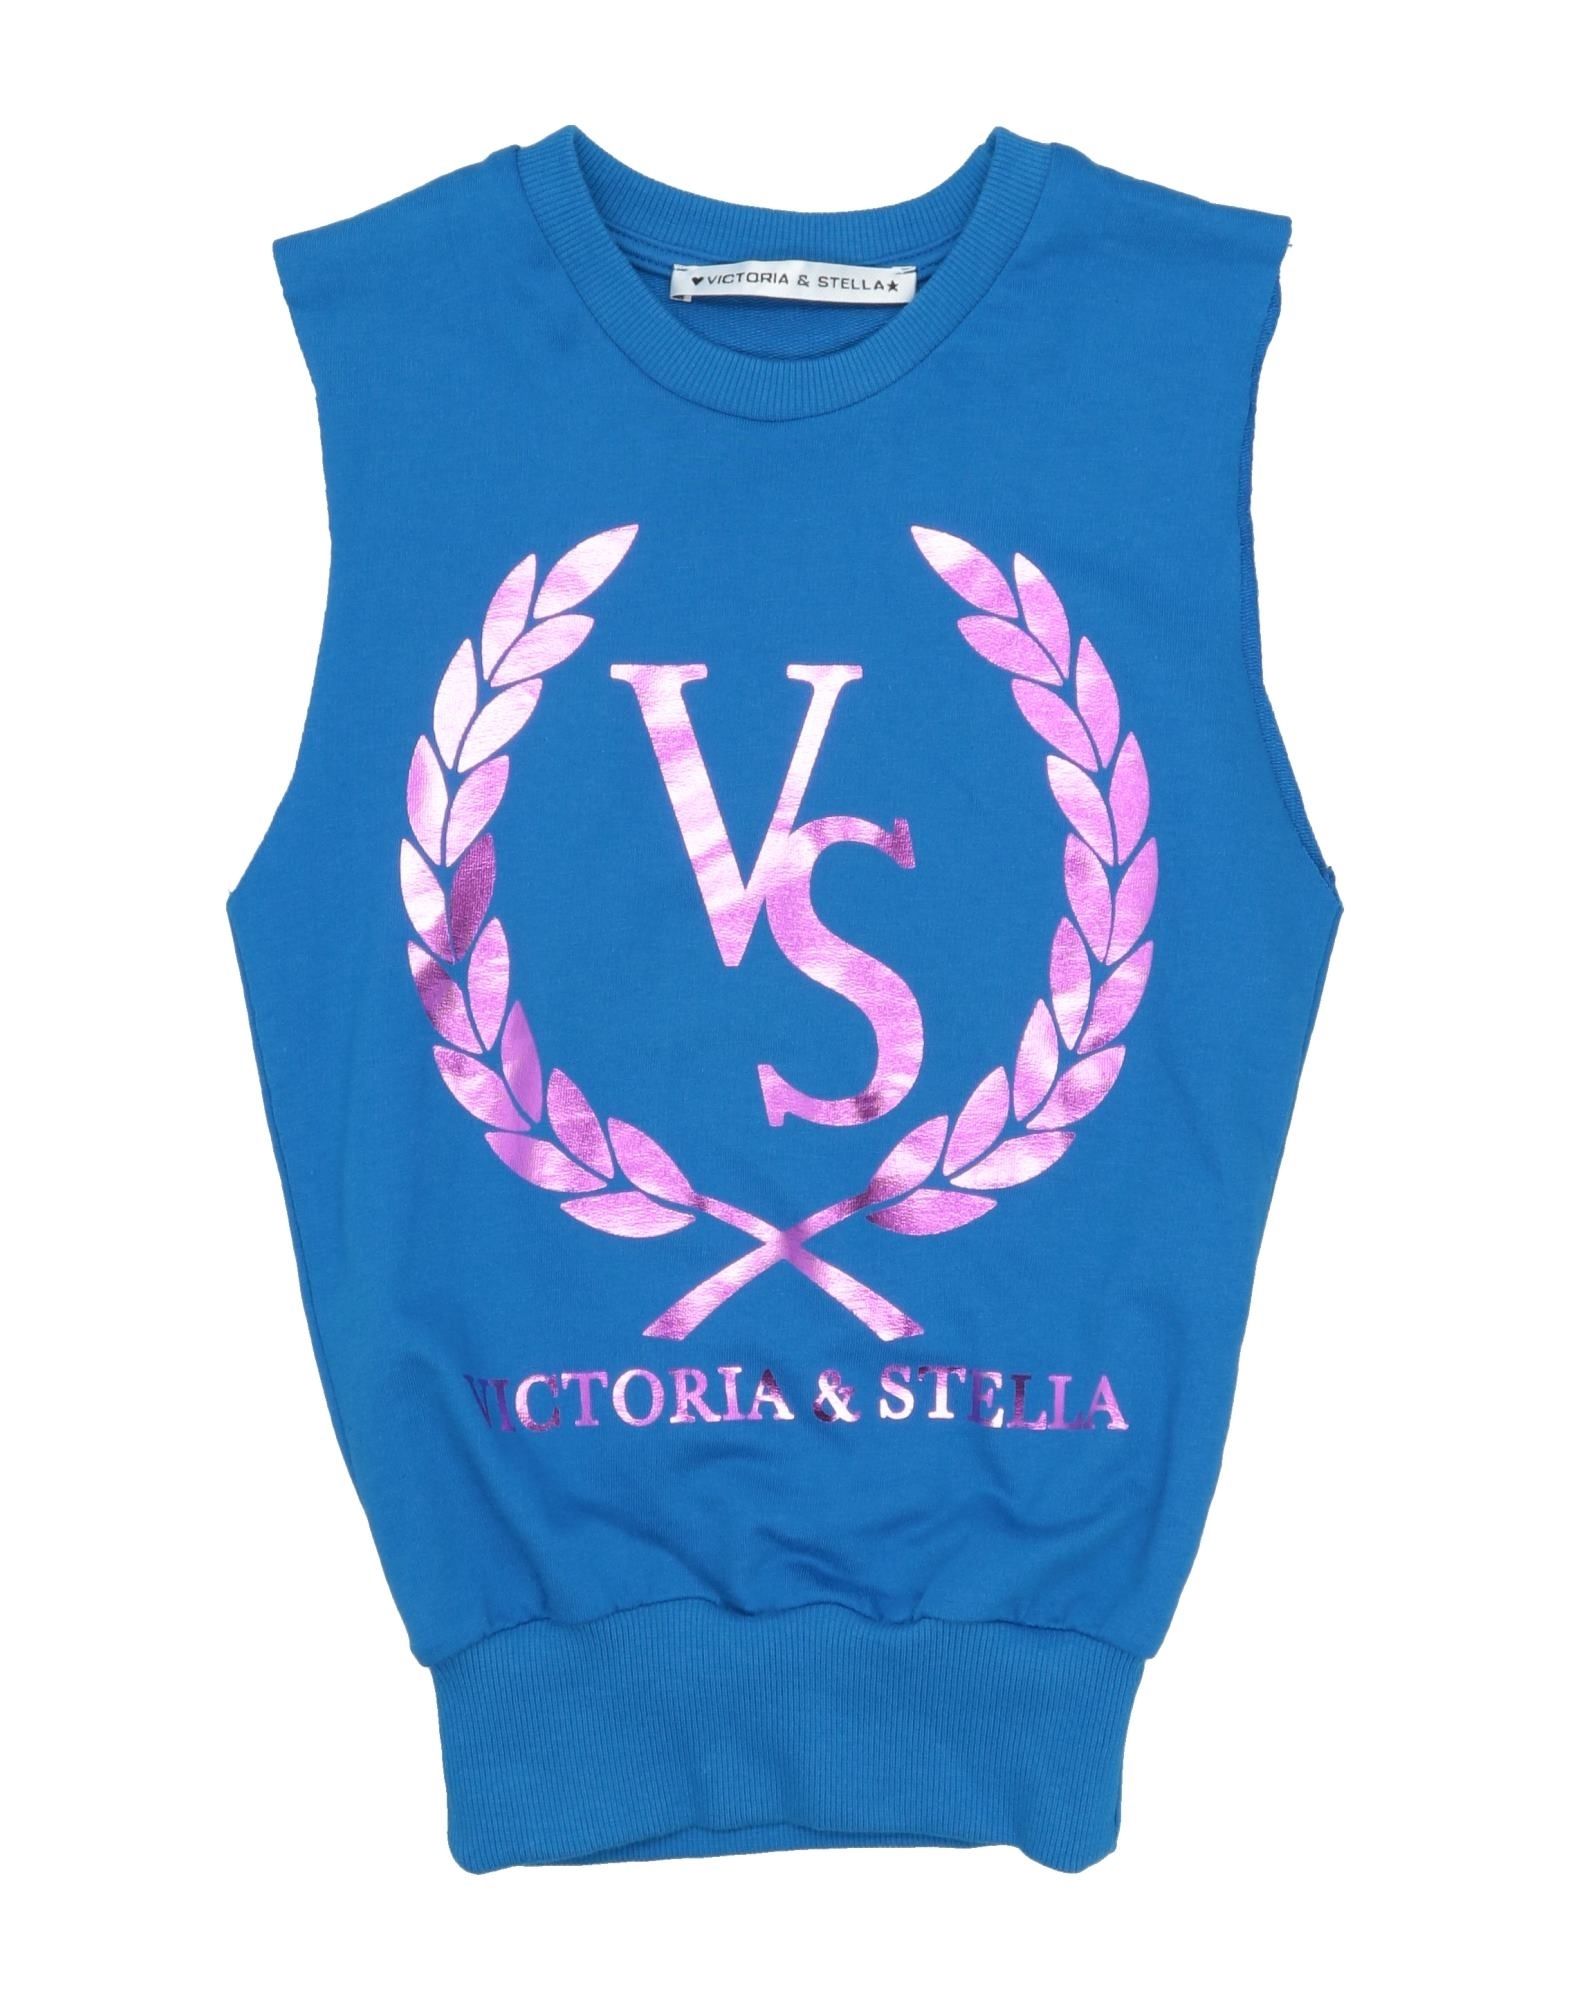 Victoria & Stella Kids' Sweatshirts In Blue